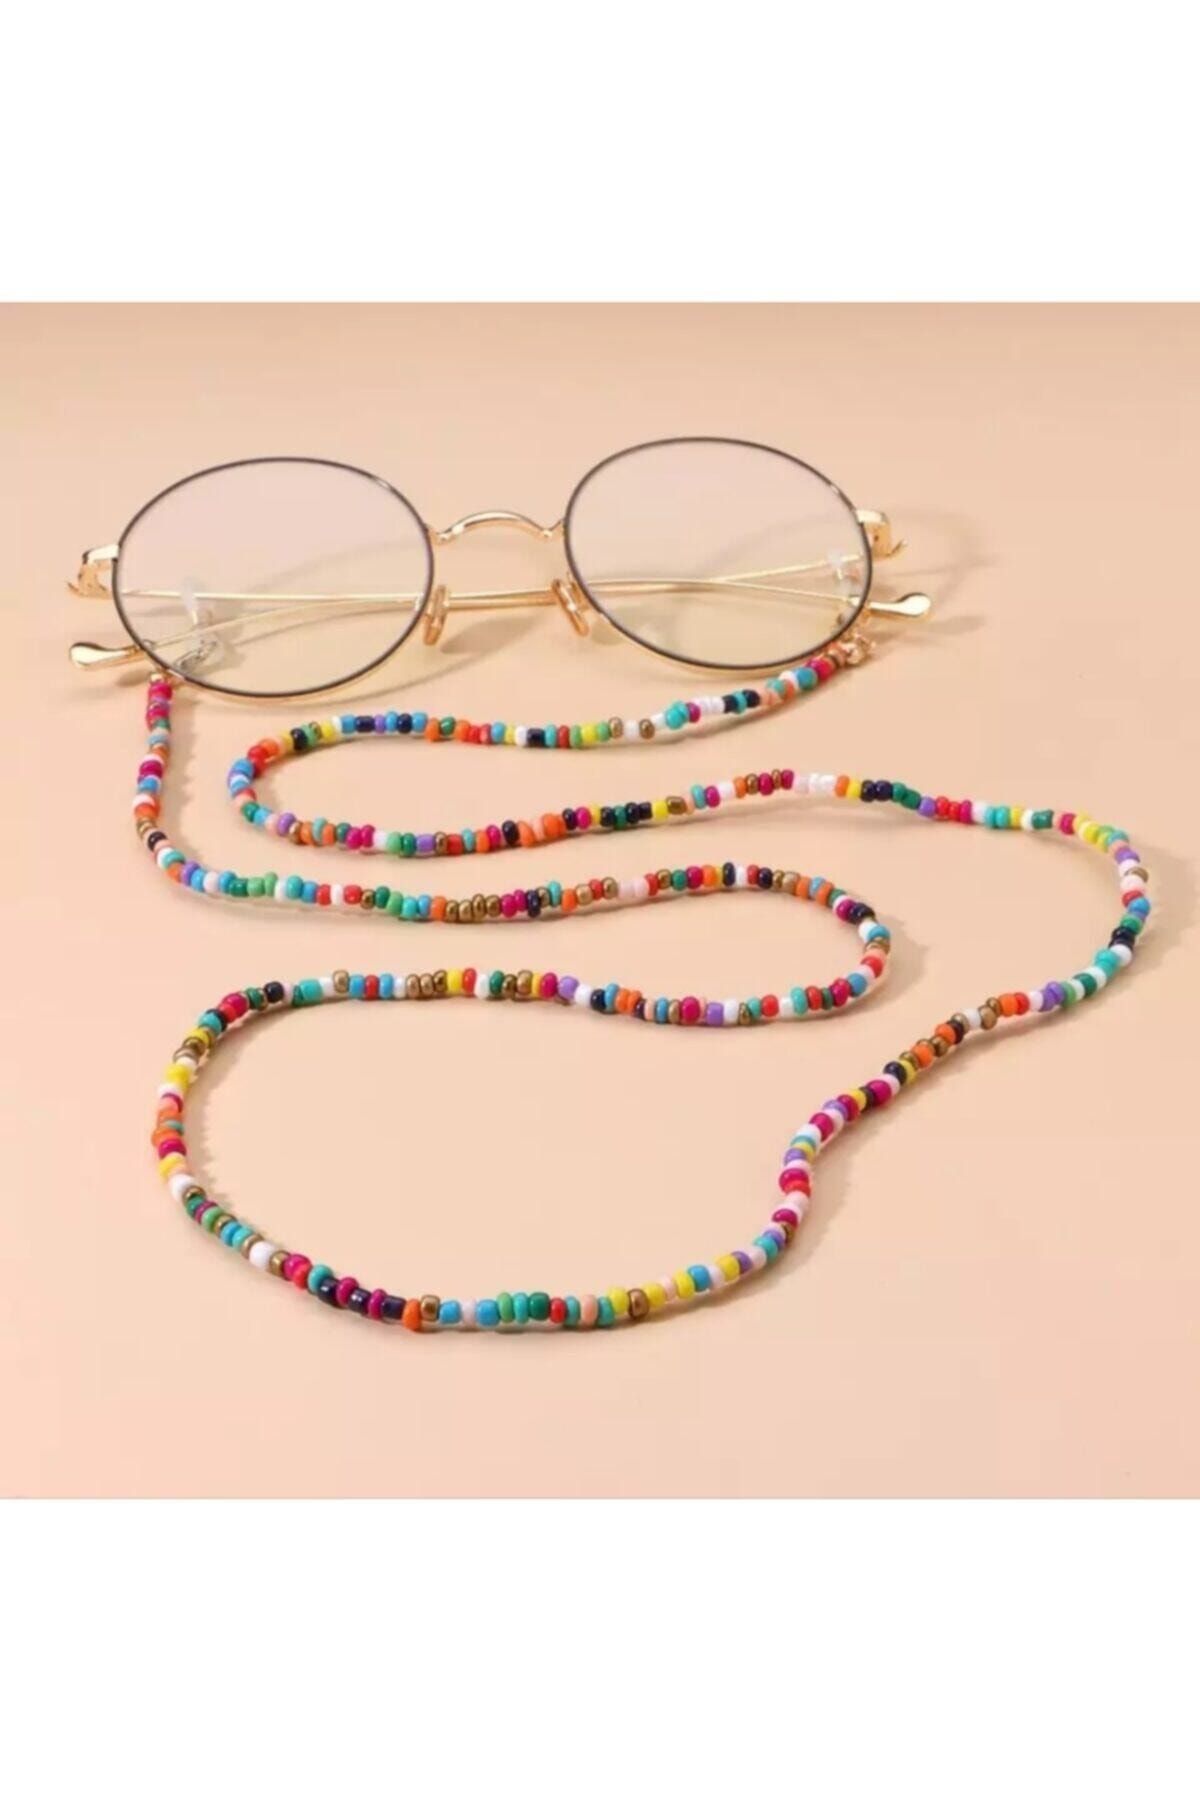 platin hediyelik Kadın Boncuklu Güneş Gözlüğü Zinciri Gözlük Ipi Askısı Aksesuarı